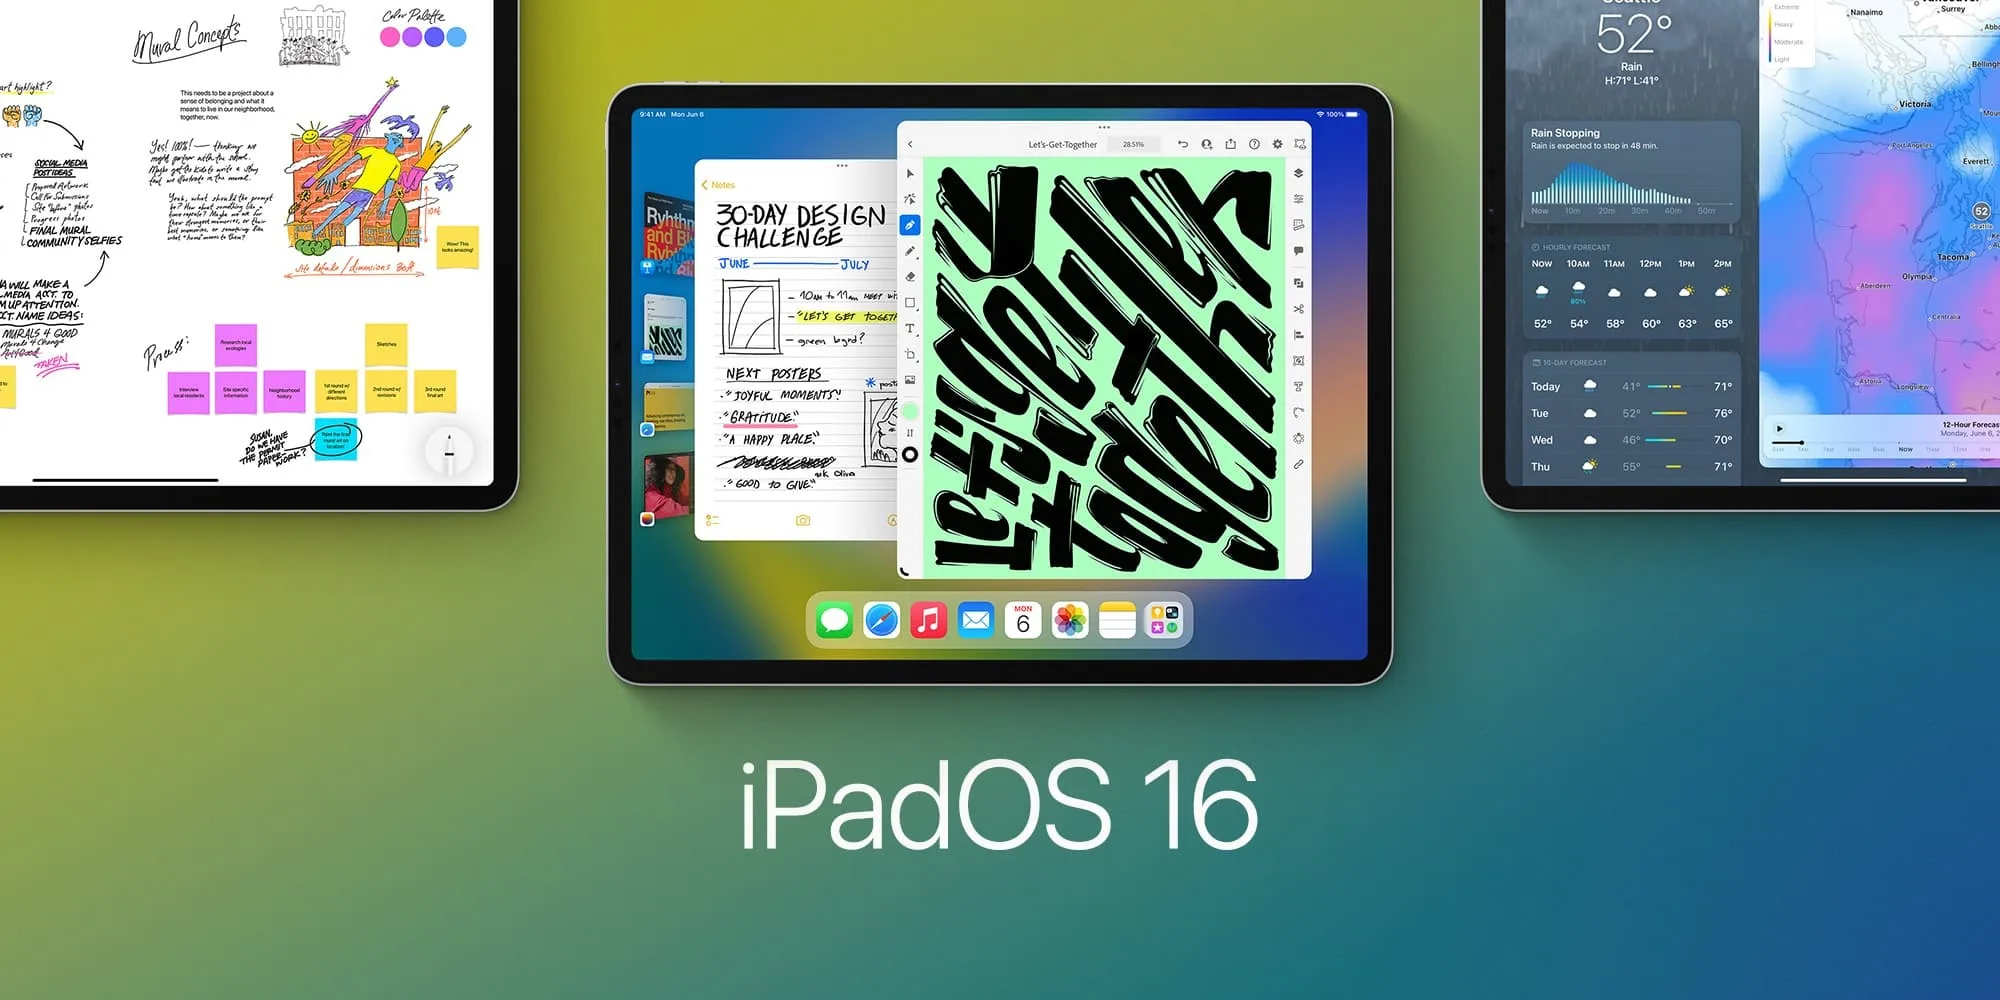 اپل iPadOS 16 با قابلیت های جدید معرفی شد